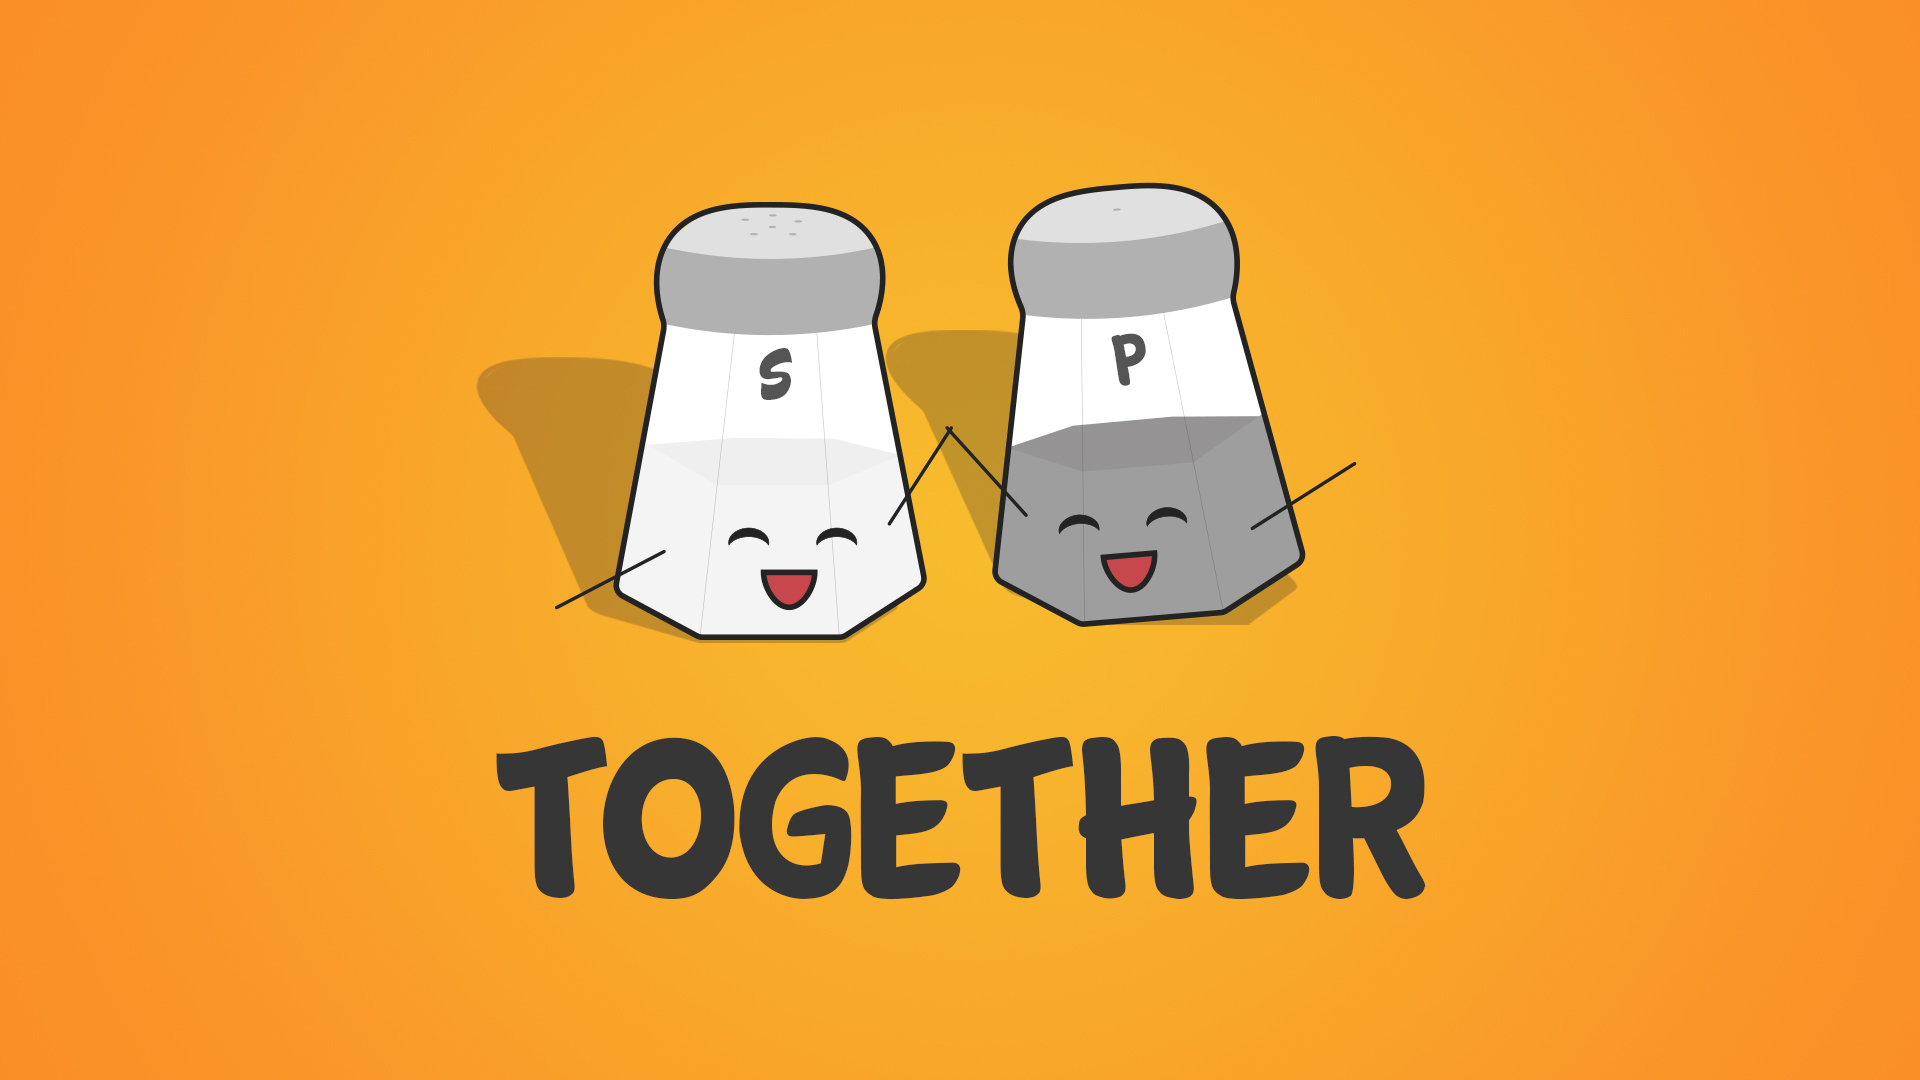 Together - 4 Together Serving - Jenny Eddison